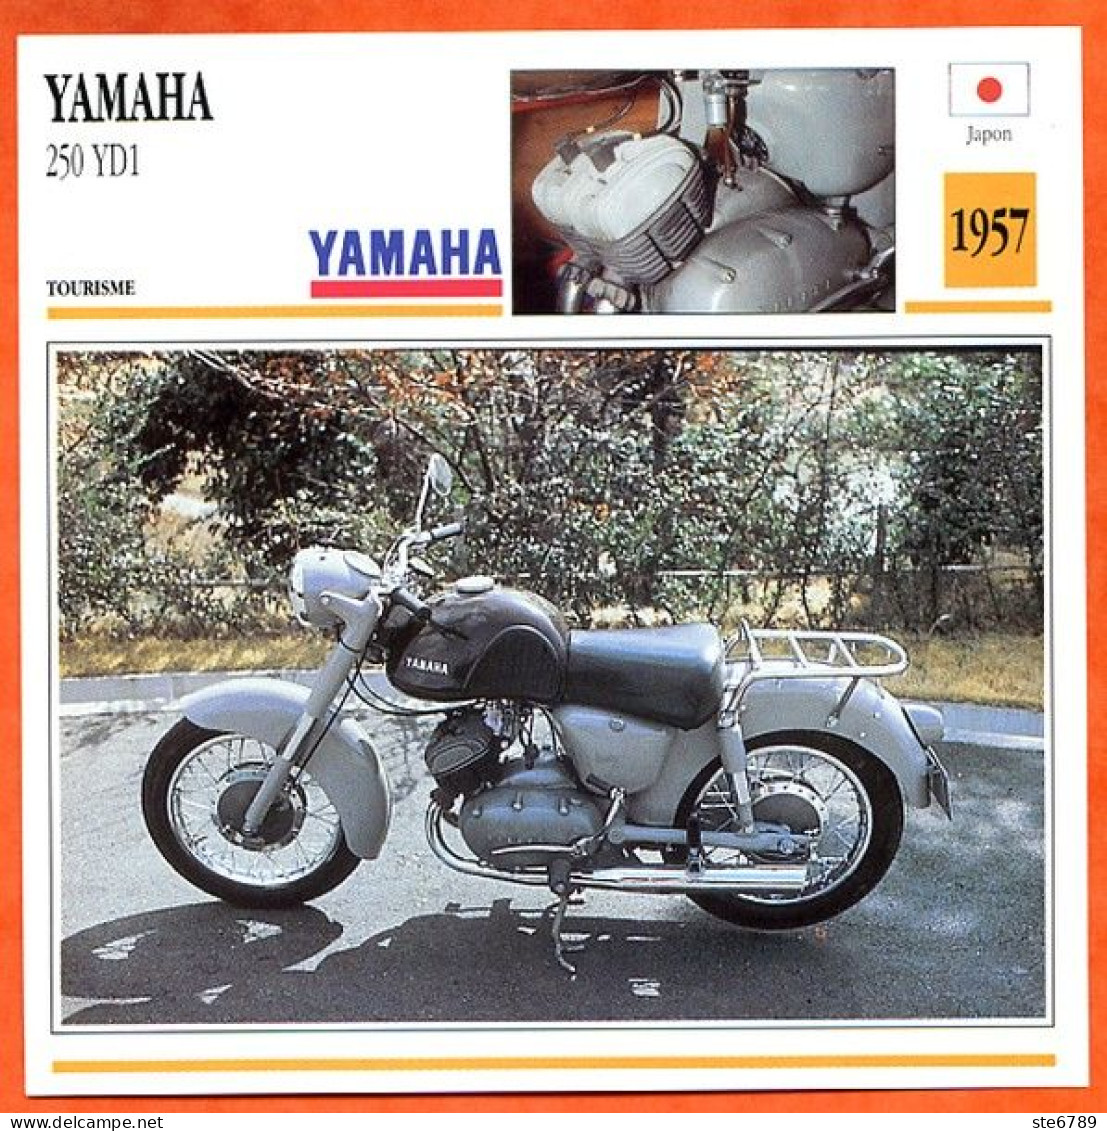 YAMAHA 250 YD1 1957  Japon Fiche Technique Moto - Sport